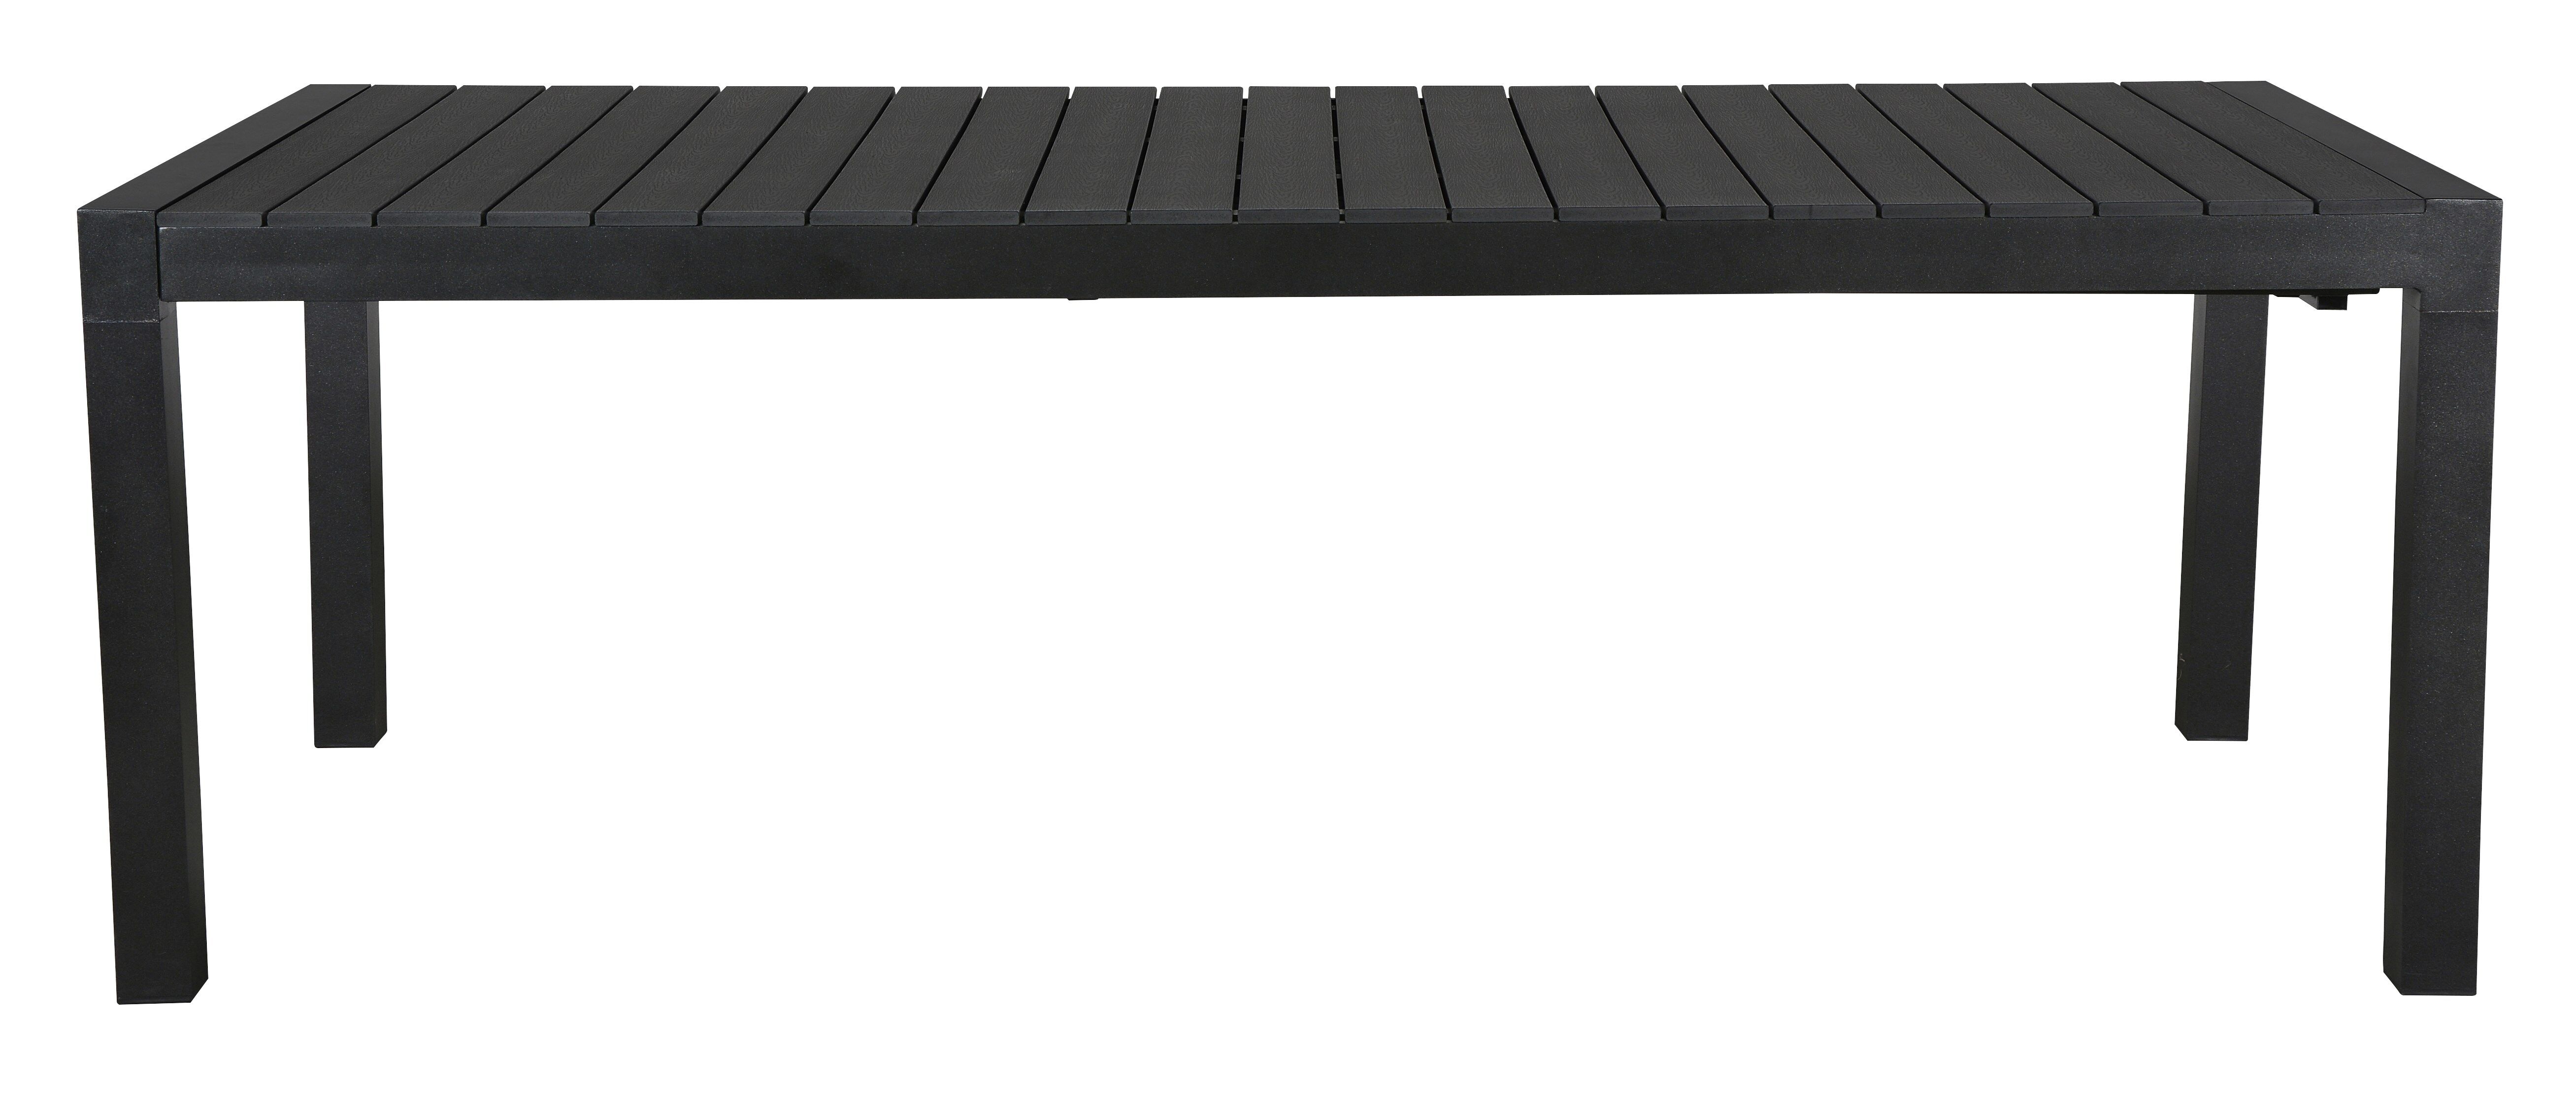 Efour hagebord, inkl. 1 tilleggsplate 205/275 cm svart/svart.